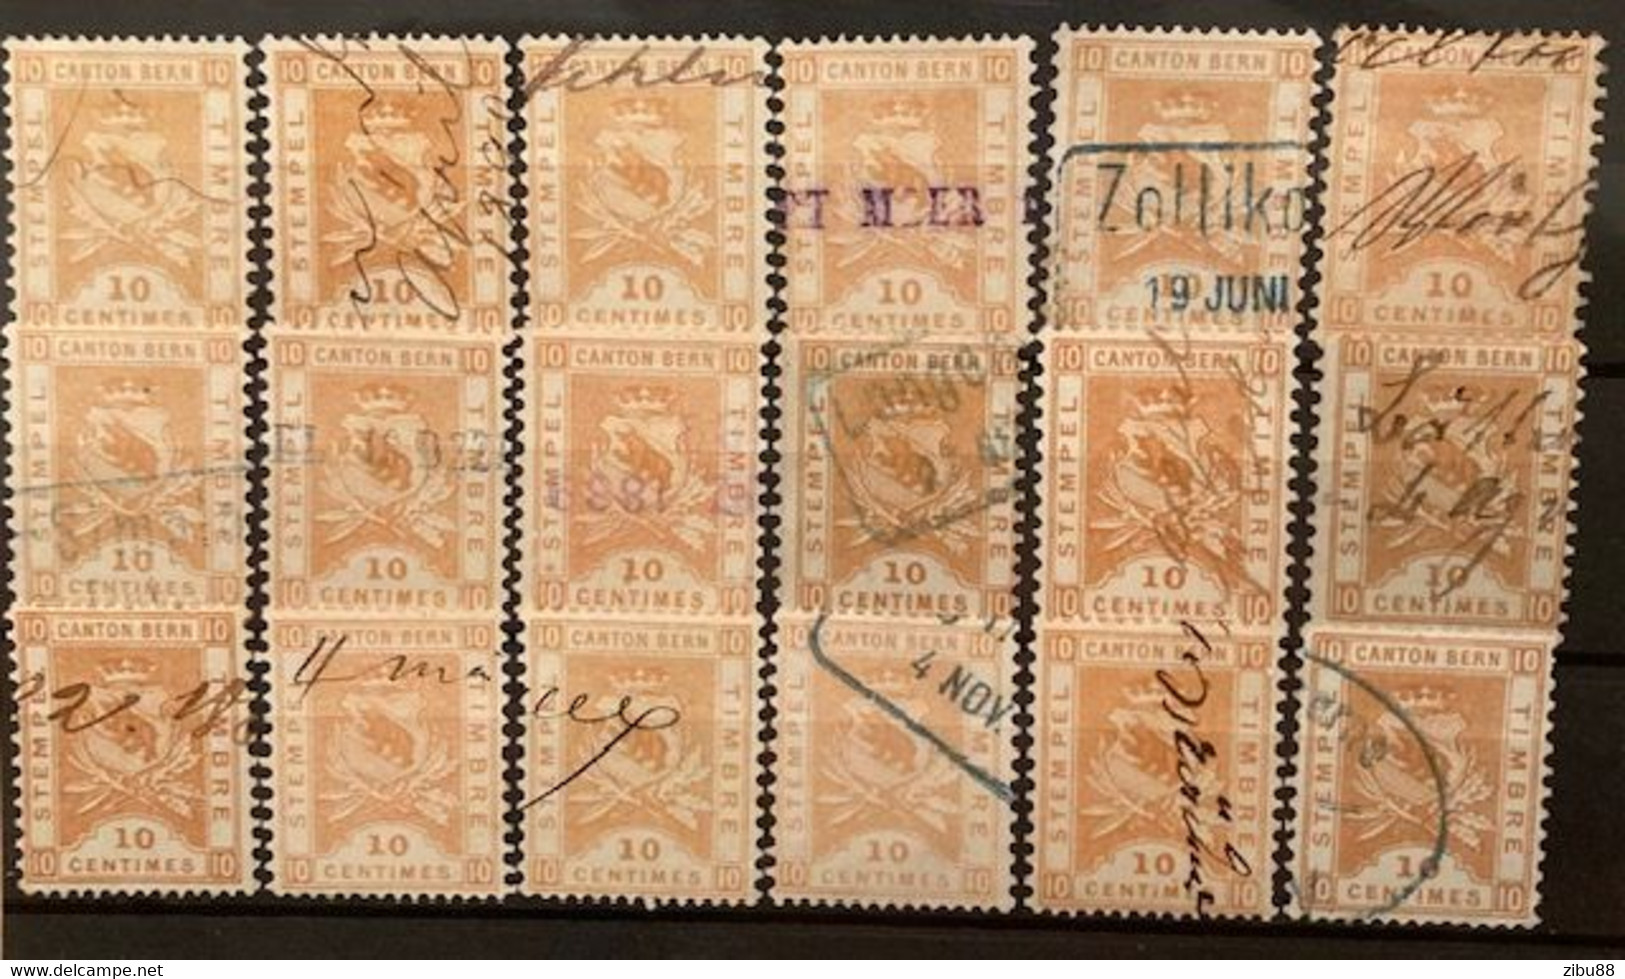 Fiskalmarken / Revenue Stamp Switzerland - Kanton Bern Steckkarte Stempelmarken 10 Centimes - Revenue Stamps